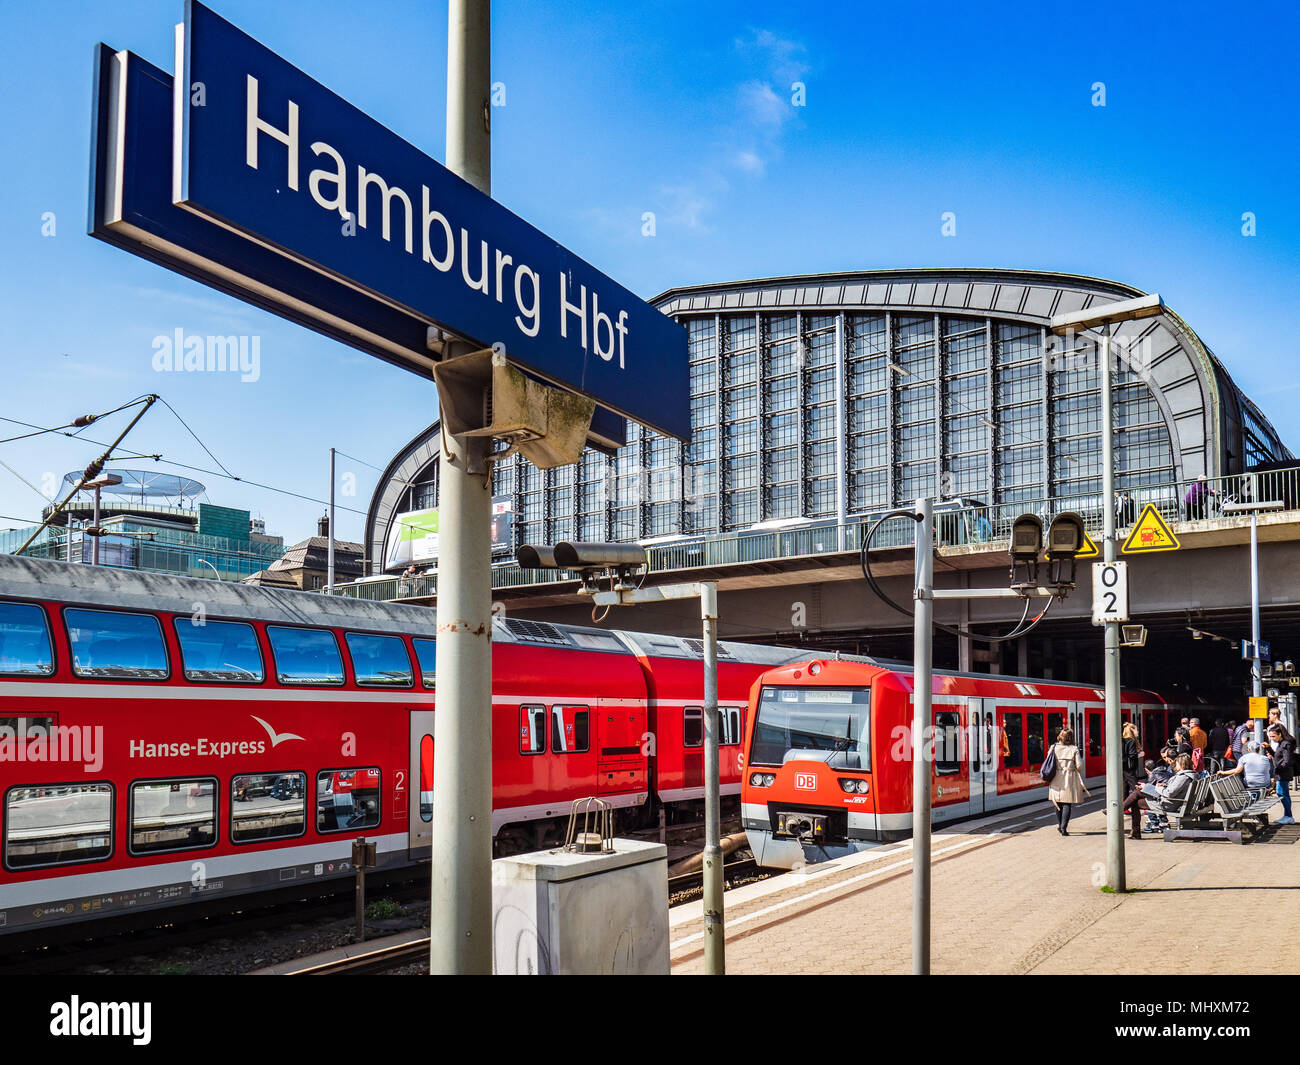 Hamburg Hauptbahnhof Hbf - la gare centrale de Hambourg a ouvert ses portes en 1906, il est le plus achalandé de l'Allemagne railway station Banque D'Images